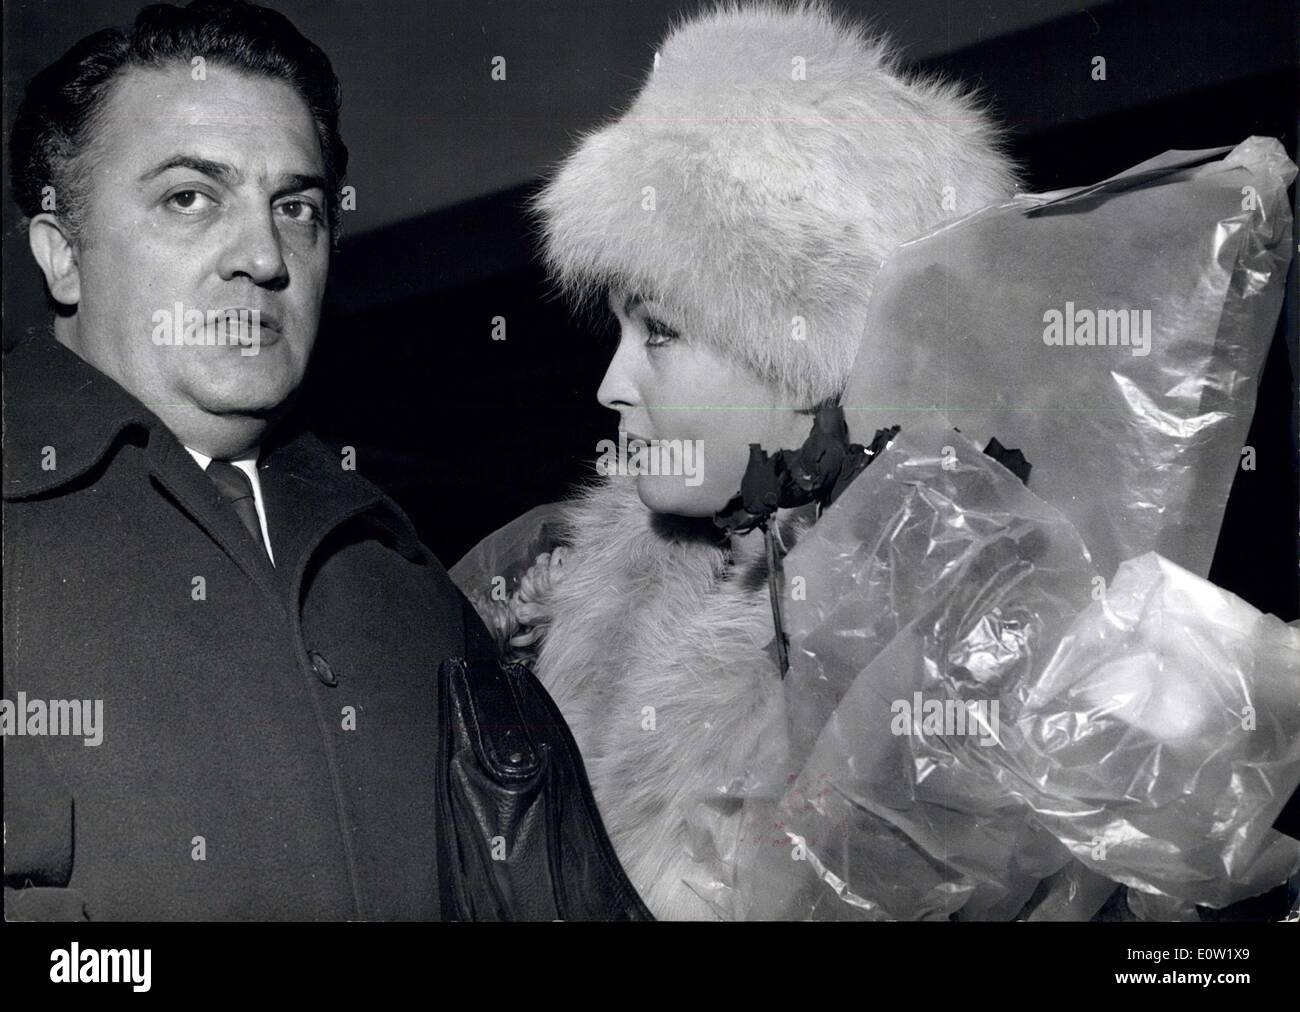 6. Dezember 1960 - italienische Film Director kommt In London: Frederico Fellini - der Regisseur von "La Dolce Vita" der Film, erschüttert und schockiert Rom - kam in London gestern - mit unter anderem - Yvonne Furneaux ein Star des Films... Der Film soll 300.000 - gekostet haben und hat 11/2 Millionen allein in Italien. Foto zeigt: Frederico Fellini und Yvonne Furneaux - am Londoner Flughafen gestern Stockfoto